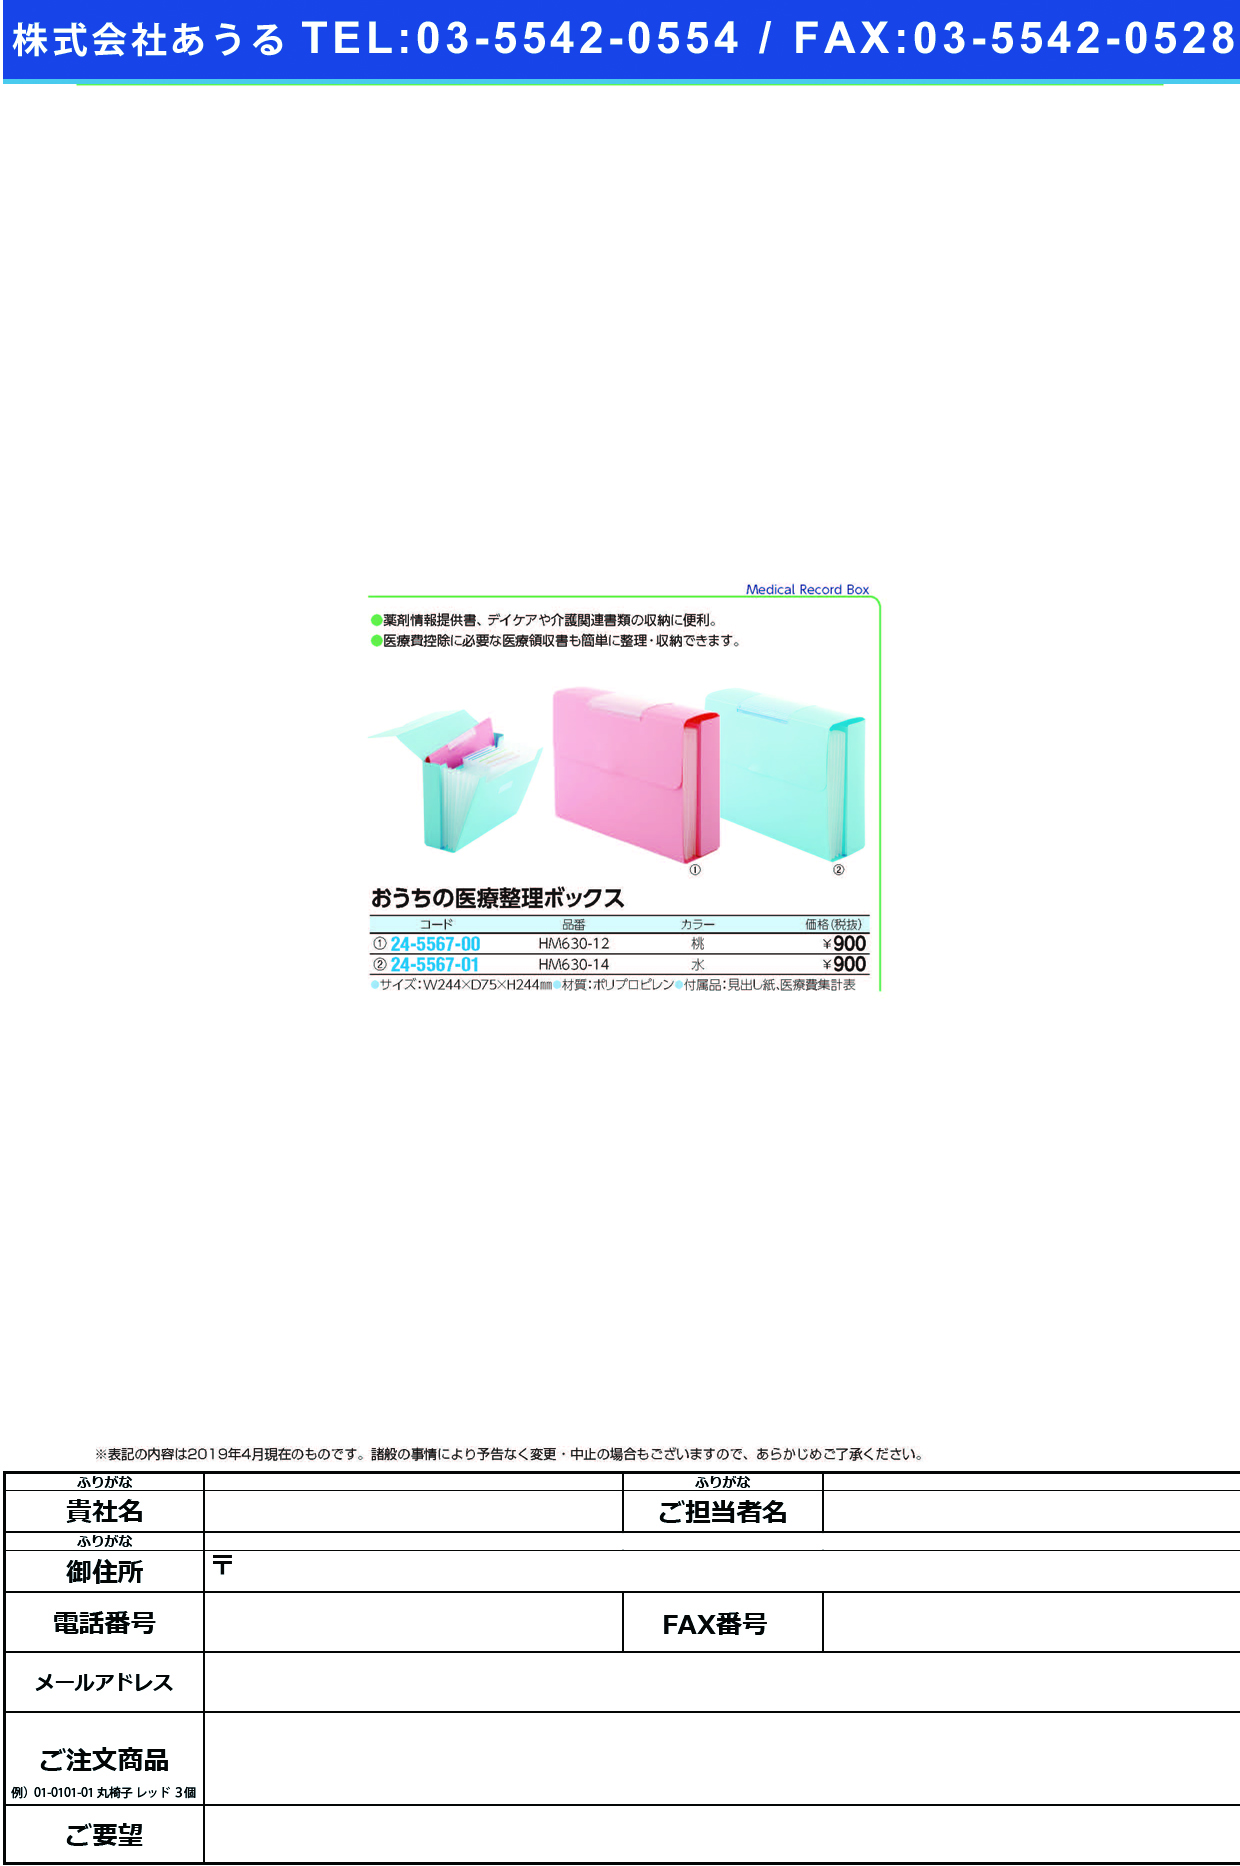 (24-5567-01)おうちの医療整理ボックス HM630-14(ﾐｽﾞｲﾛ) ｵｳﾁﾉｲﾘｮｳｾｲﾘﾎﾞｯｸｽ(ＬＩＨＩＴＬＡＢ．)【1個単位】【2019年カタログ商品】